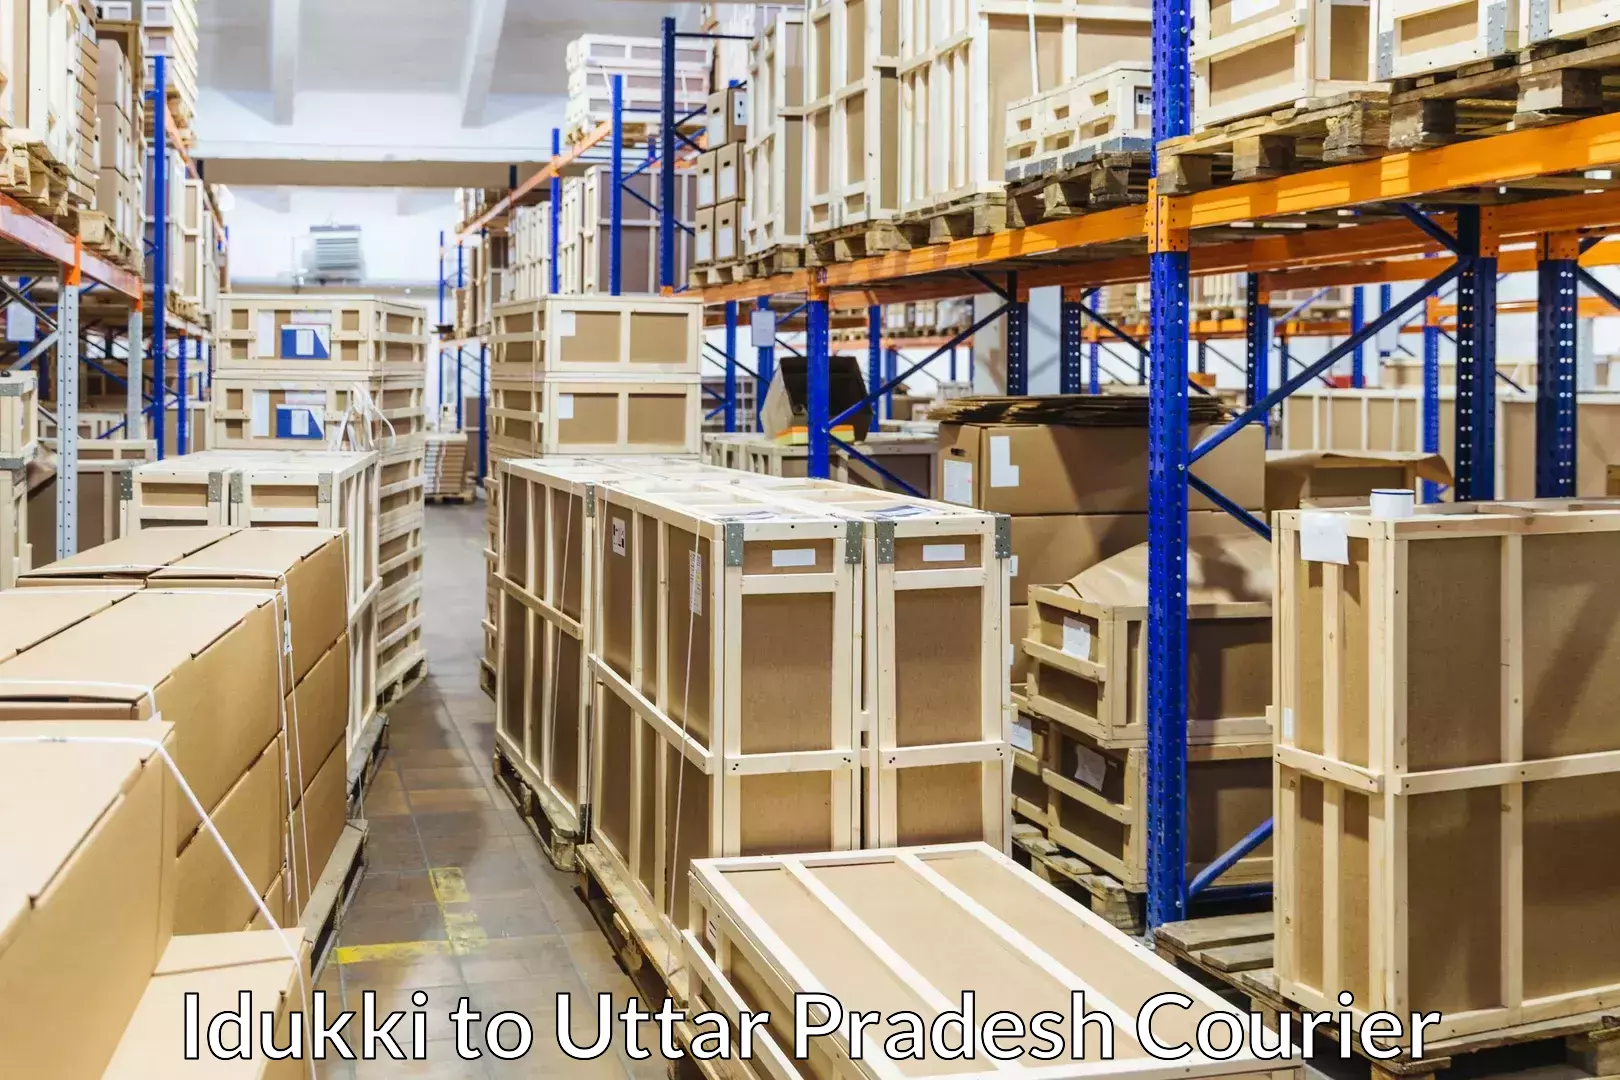 Furniture relocation services Idukki to Uttar Pradesh